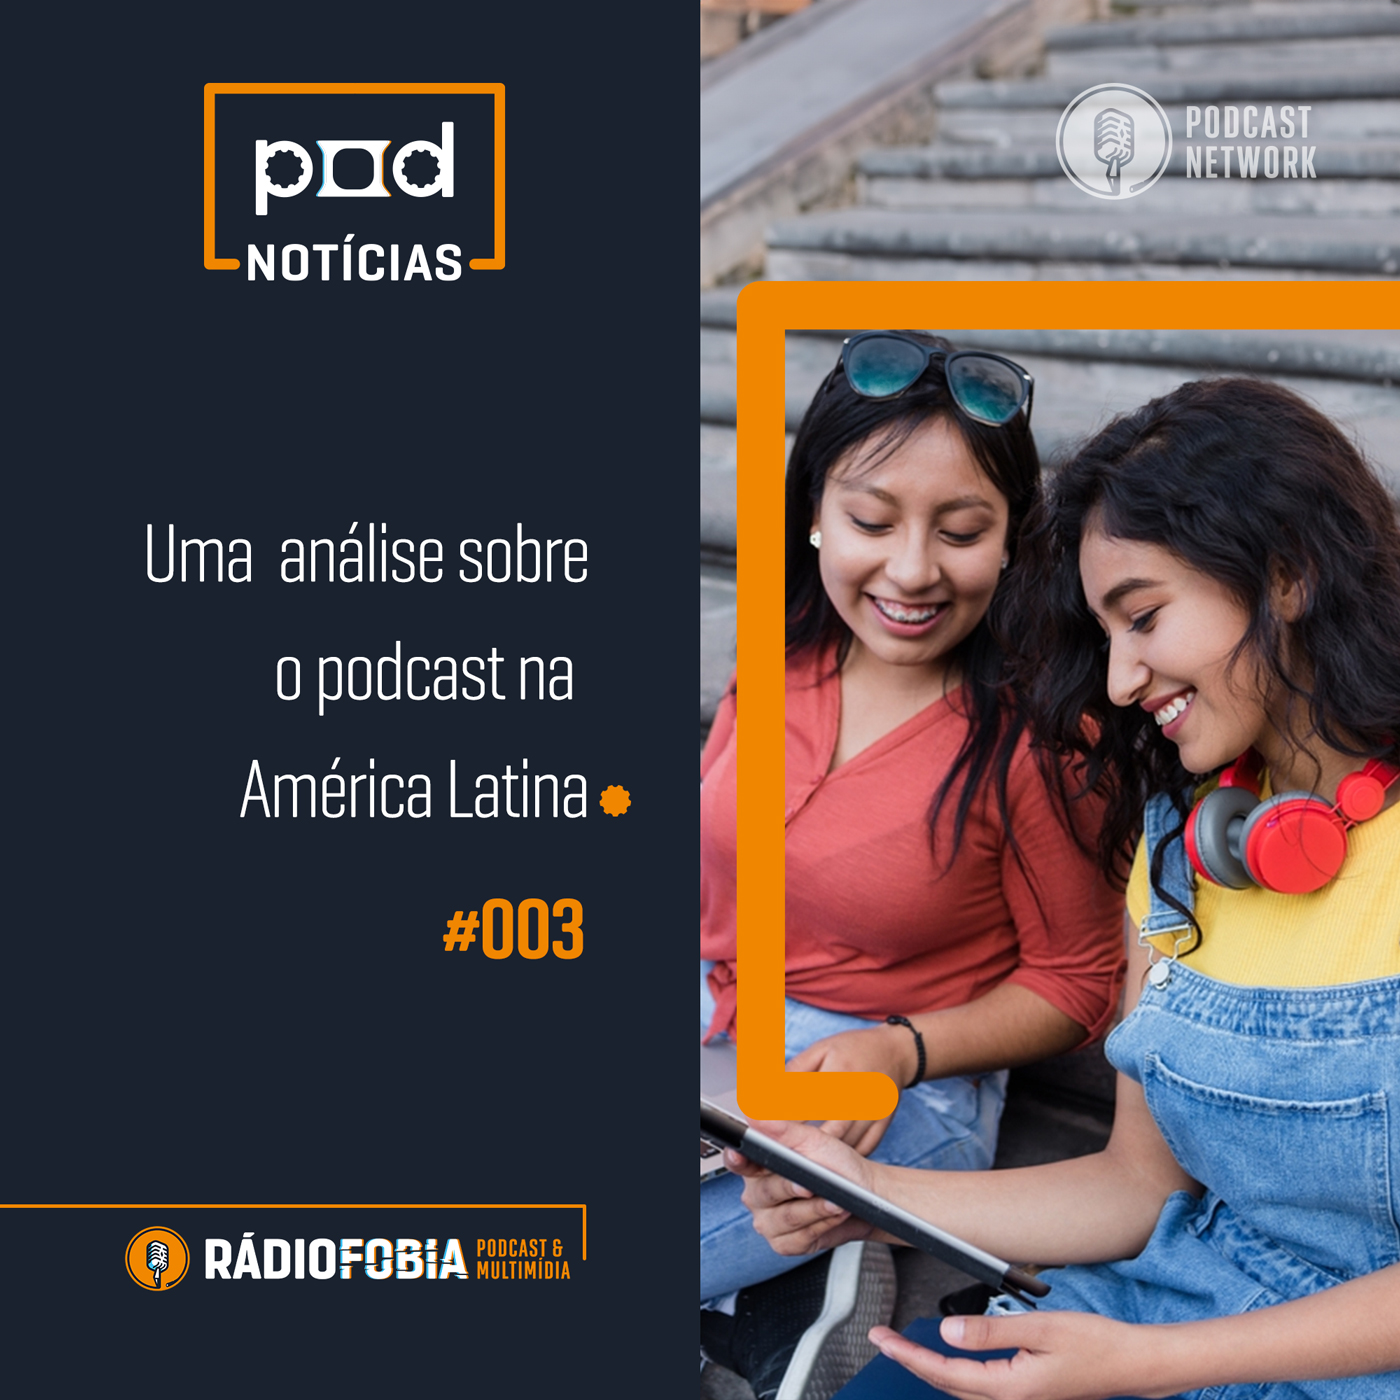 Pod Notícias 003 – Uma análise sobre o podcast na América Latina